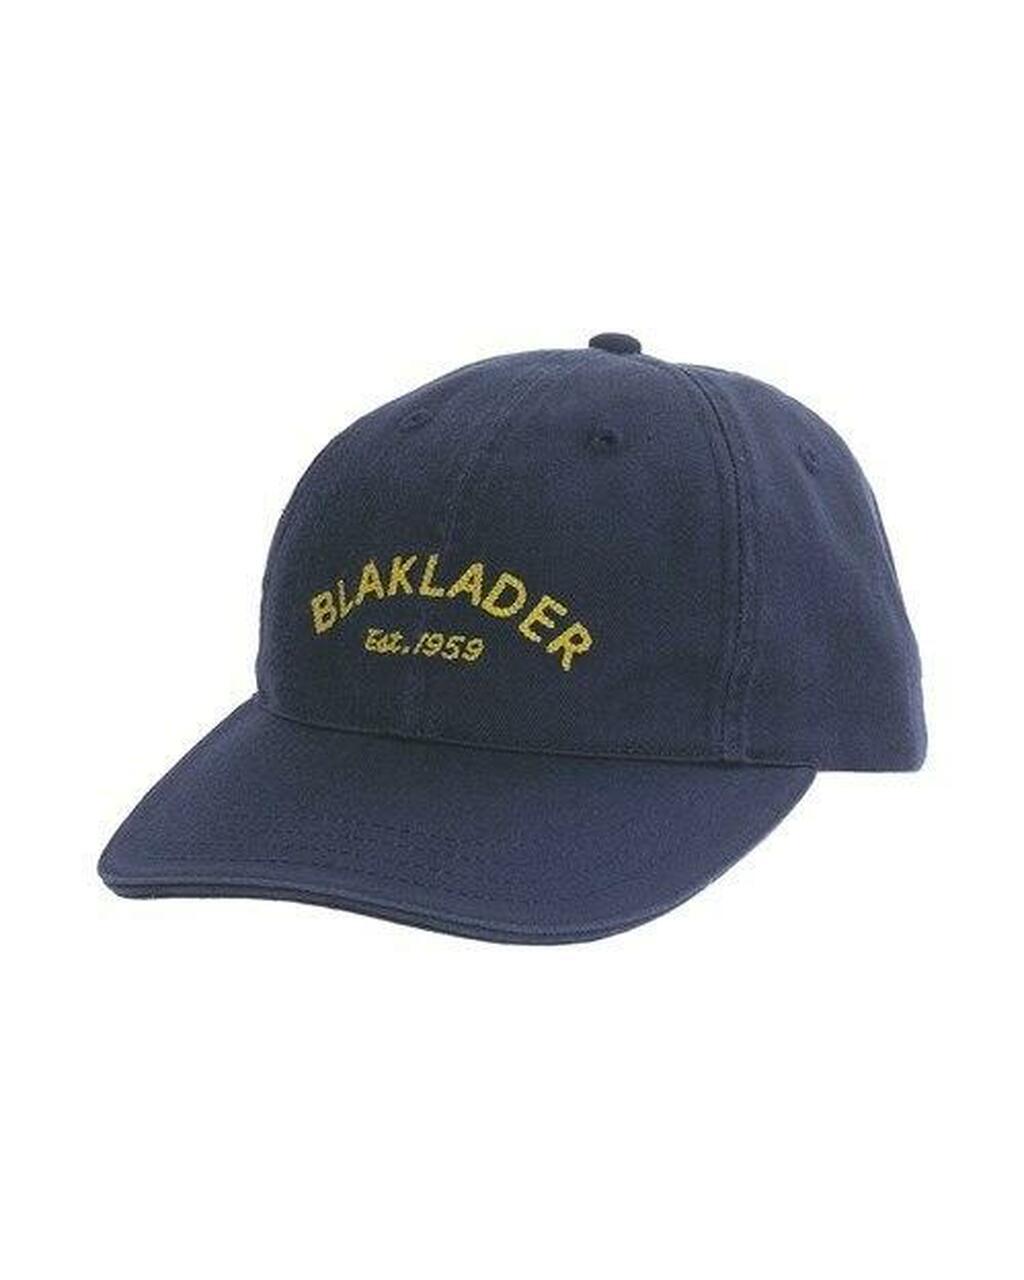 Blaklader 2051 Cap - Navy Blue - Trusted Gear Company LLC